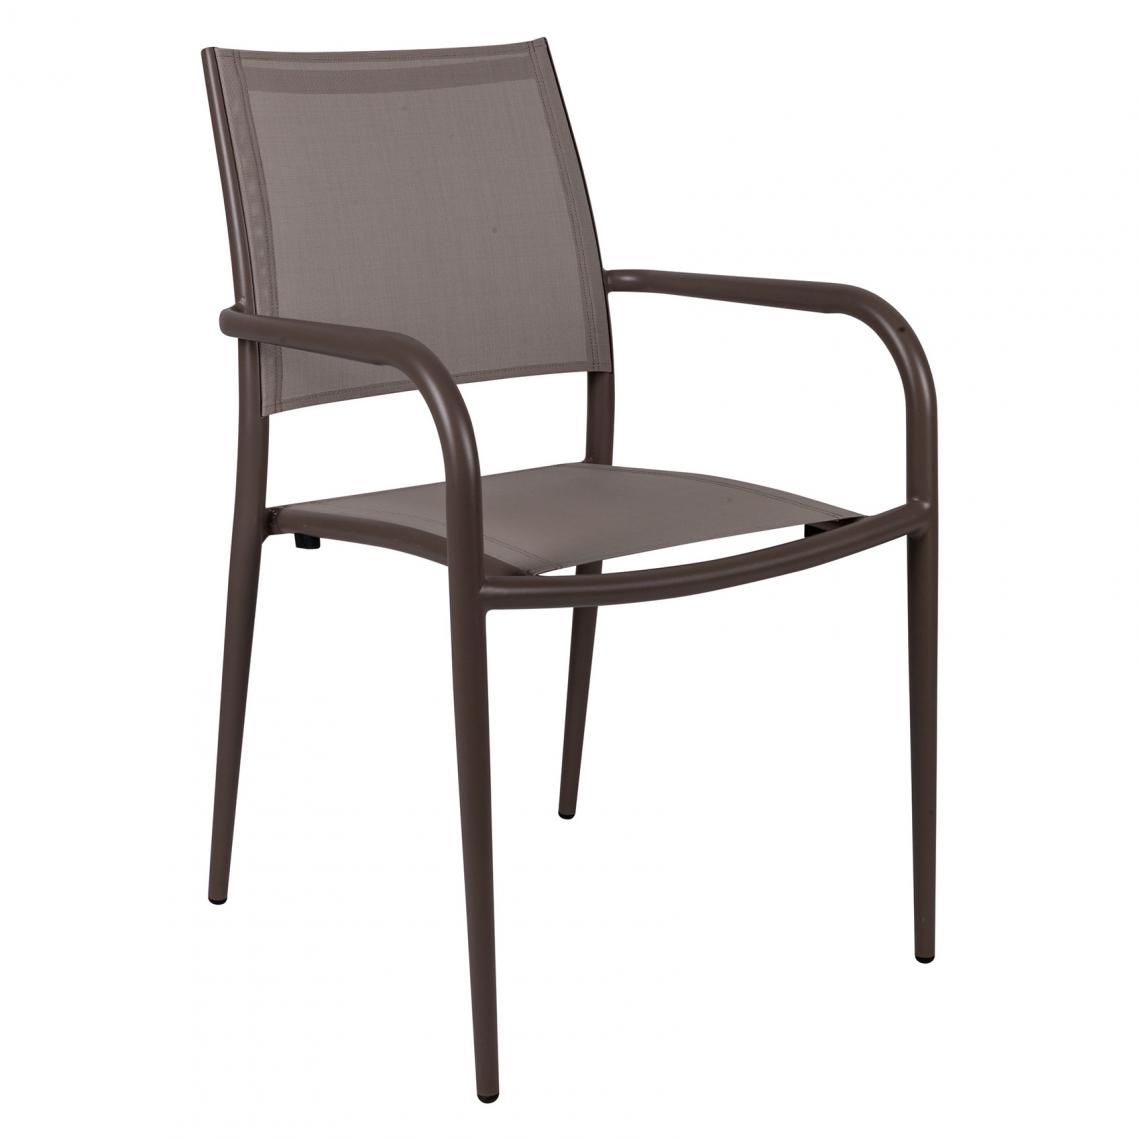 Alter - Chaise empilable en aluminium et textilène, coloris marron, 56 x 62 x h85 cm - Chaises